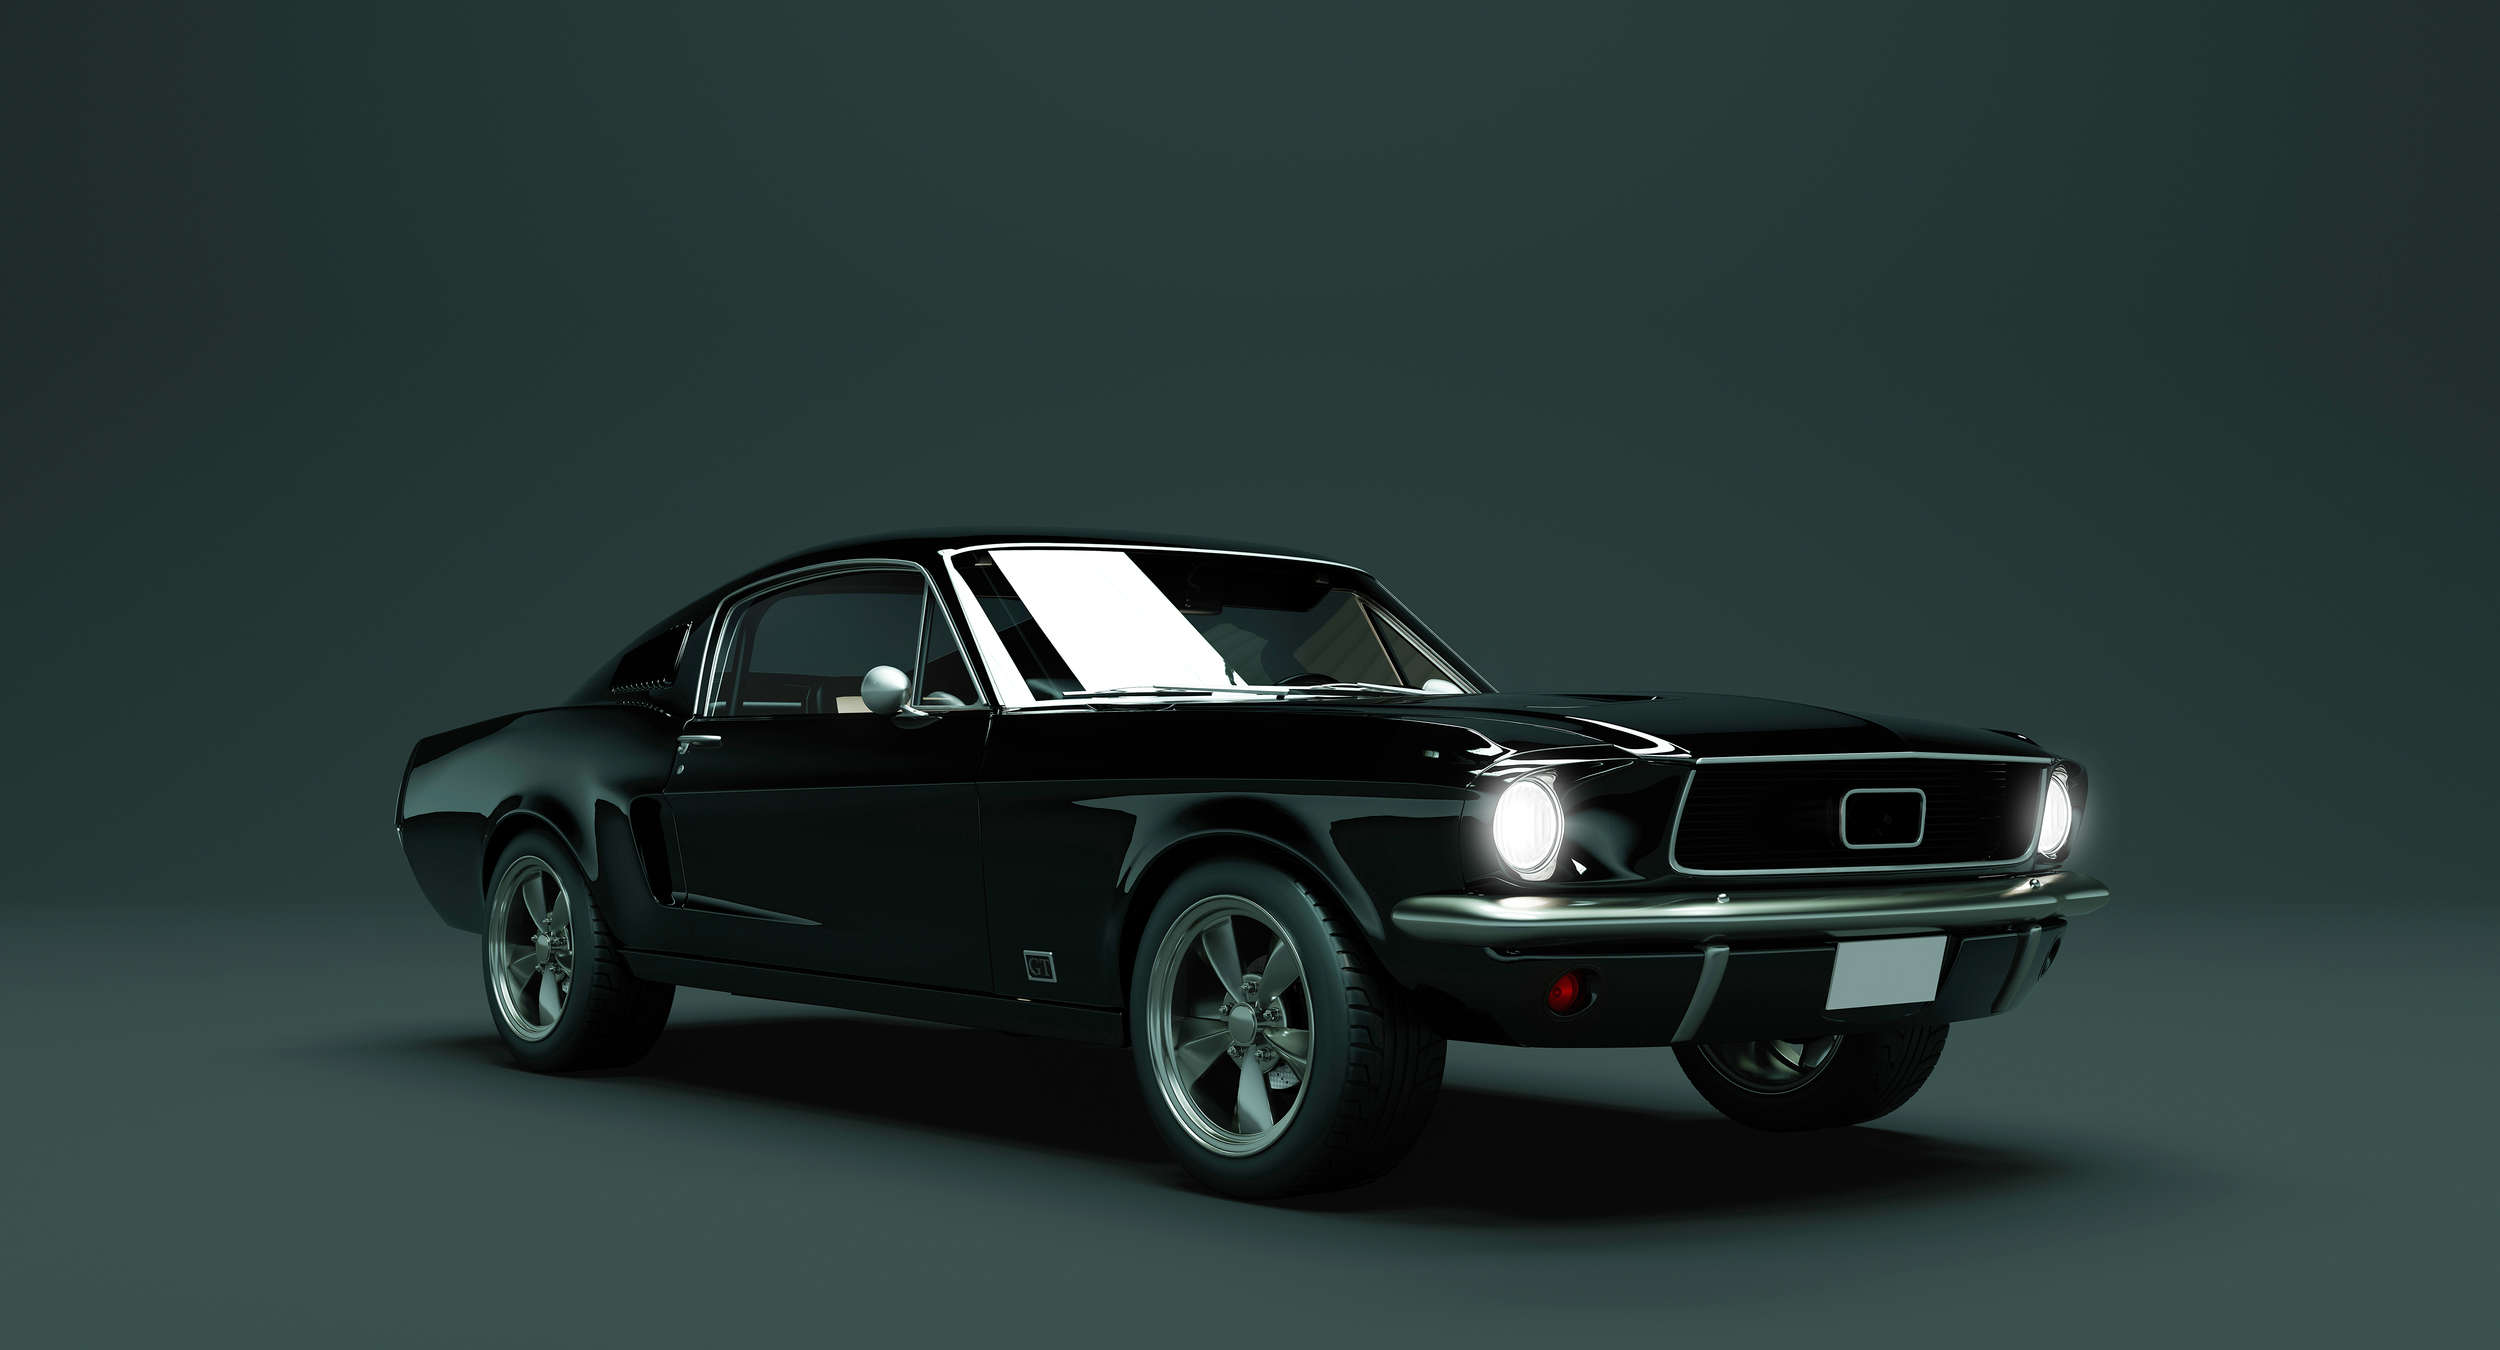             Mustang 2 - papier peint, Mustang 1968 Vintage Car - bleu, noir | Premium intissé lisse
        